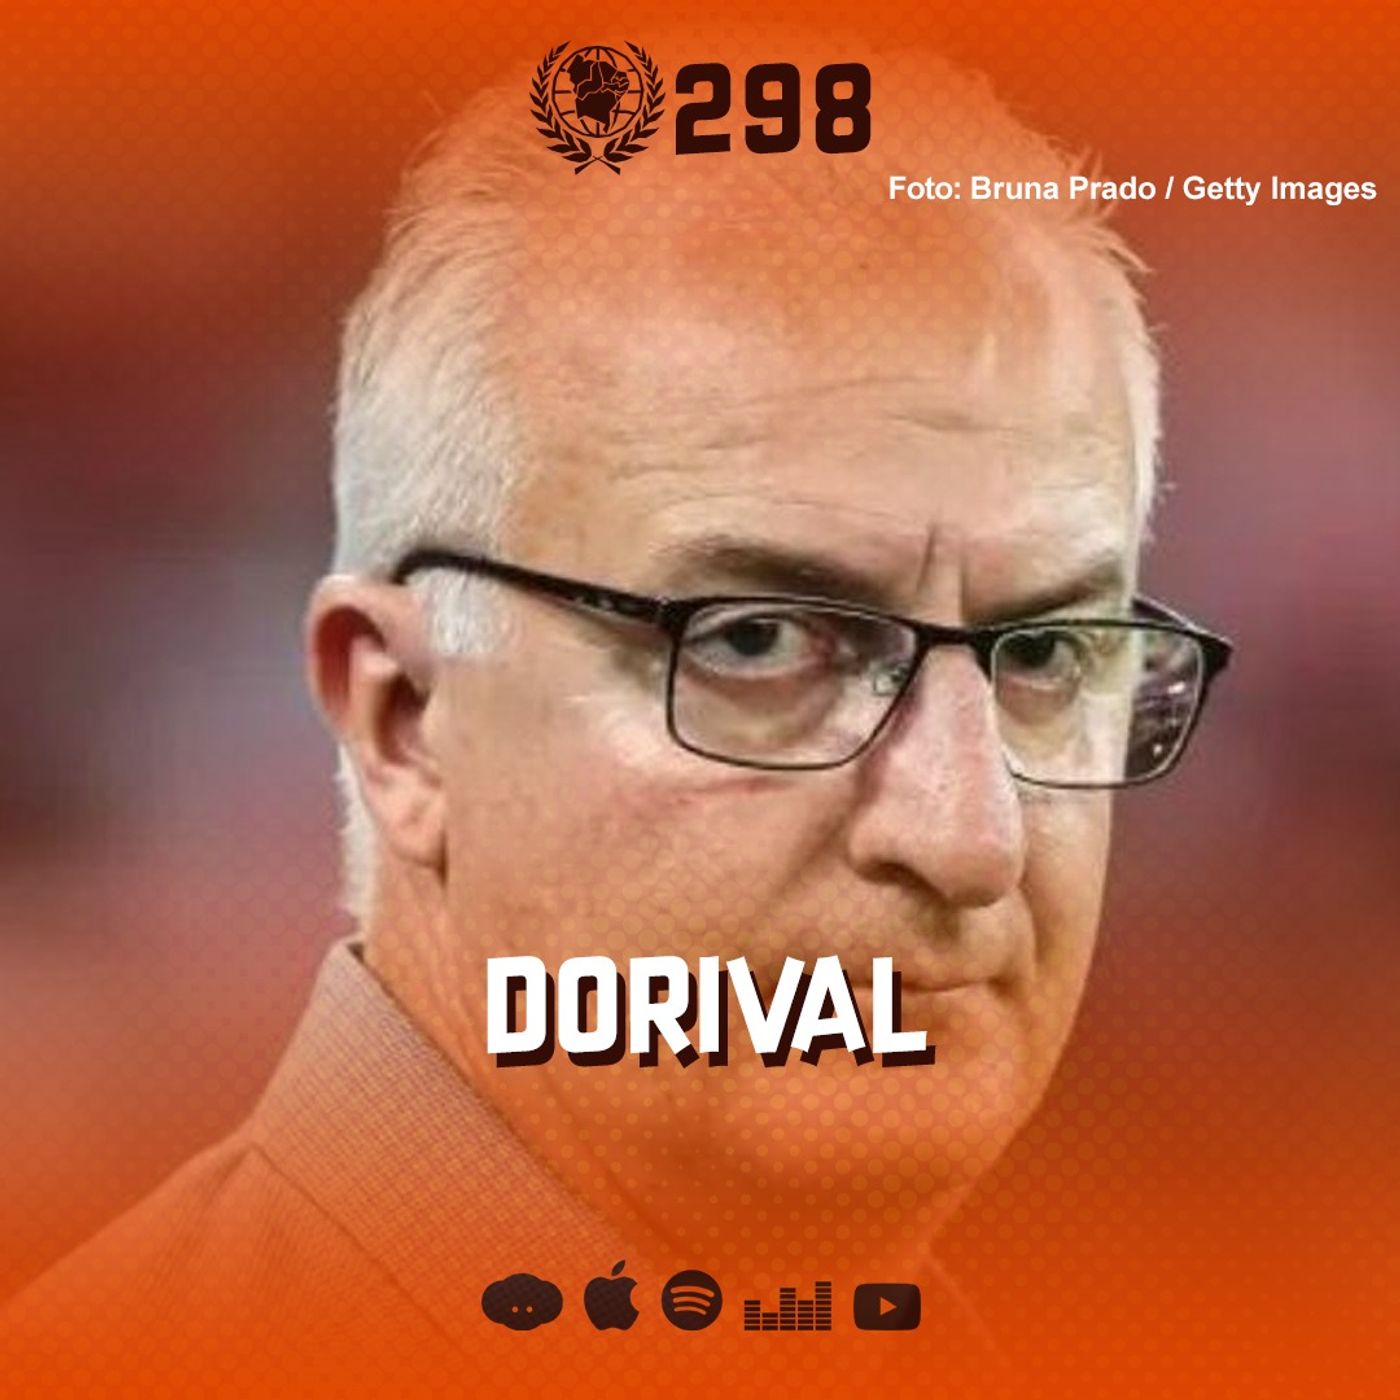 #298 - Dorival